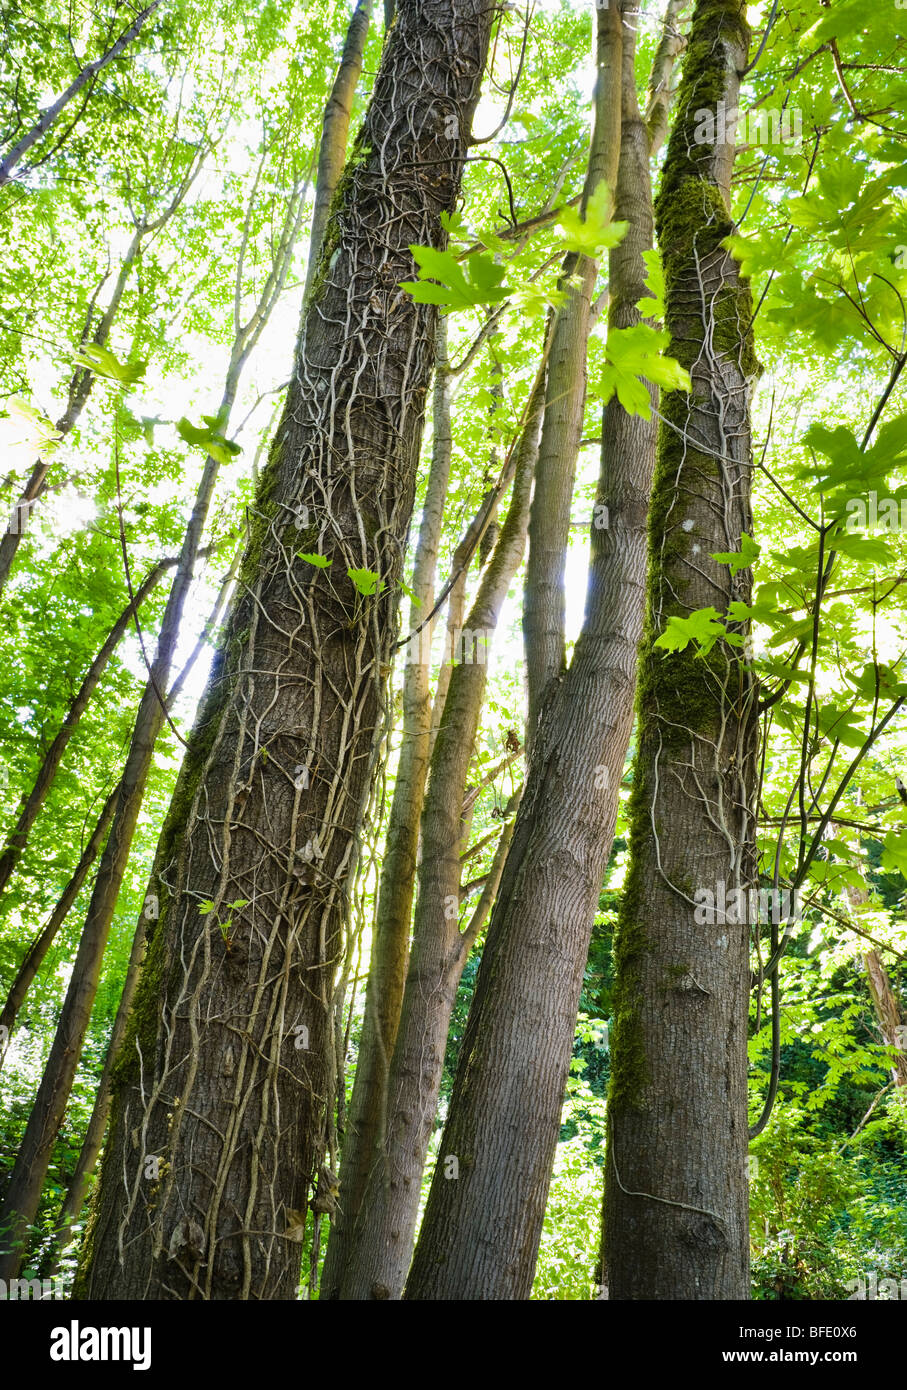 Les efforts de conservation couper le lierre envahissant le tuer sur les arbres. West Seattle, Washington, USA. Banque D'Images